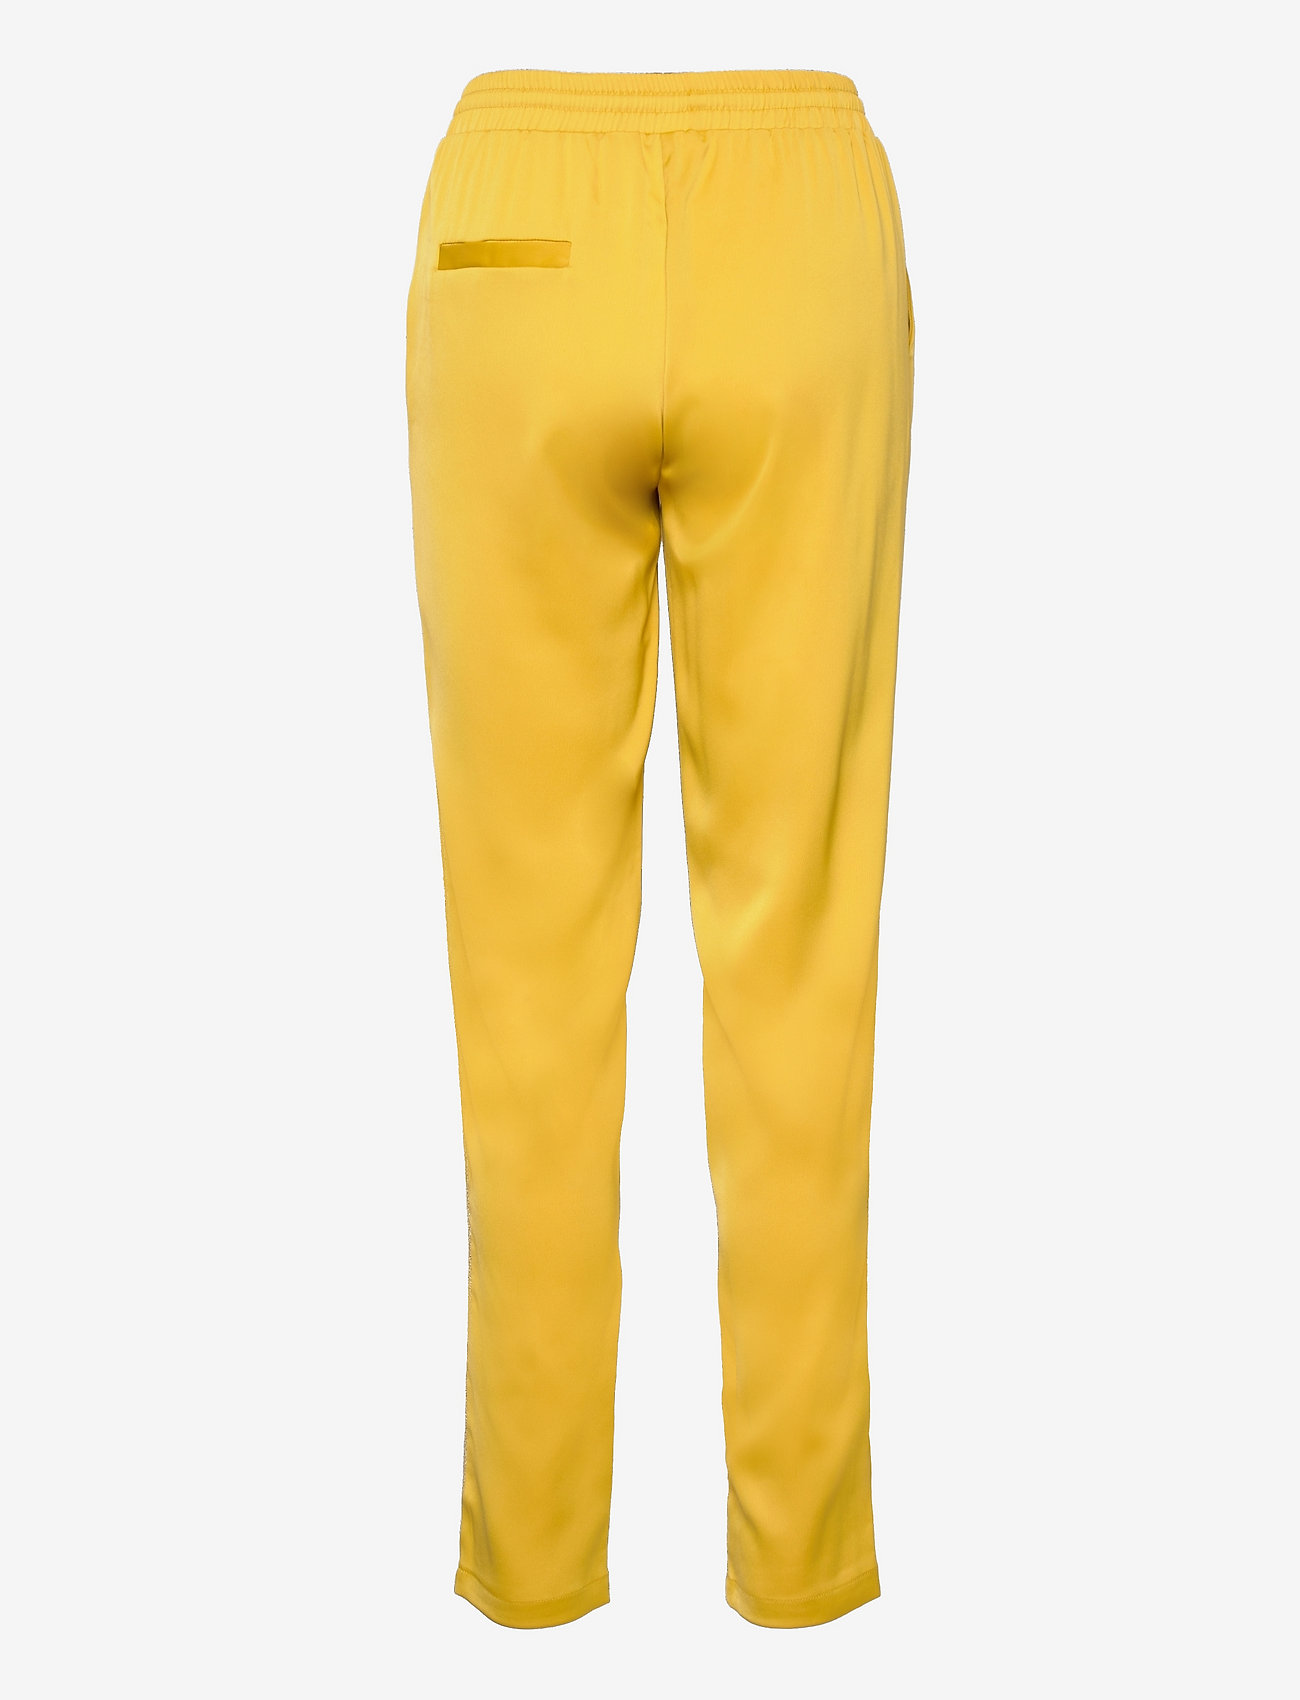 Sofie Schnoor - Pants - jogginghosen - yellow - 1